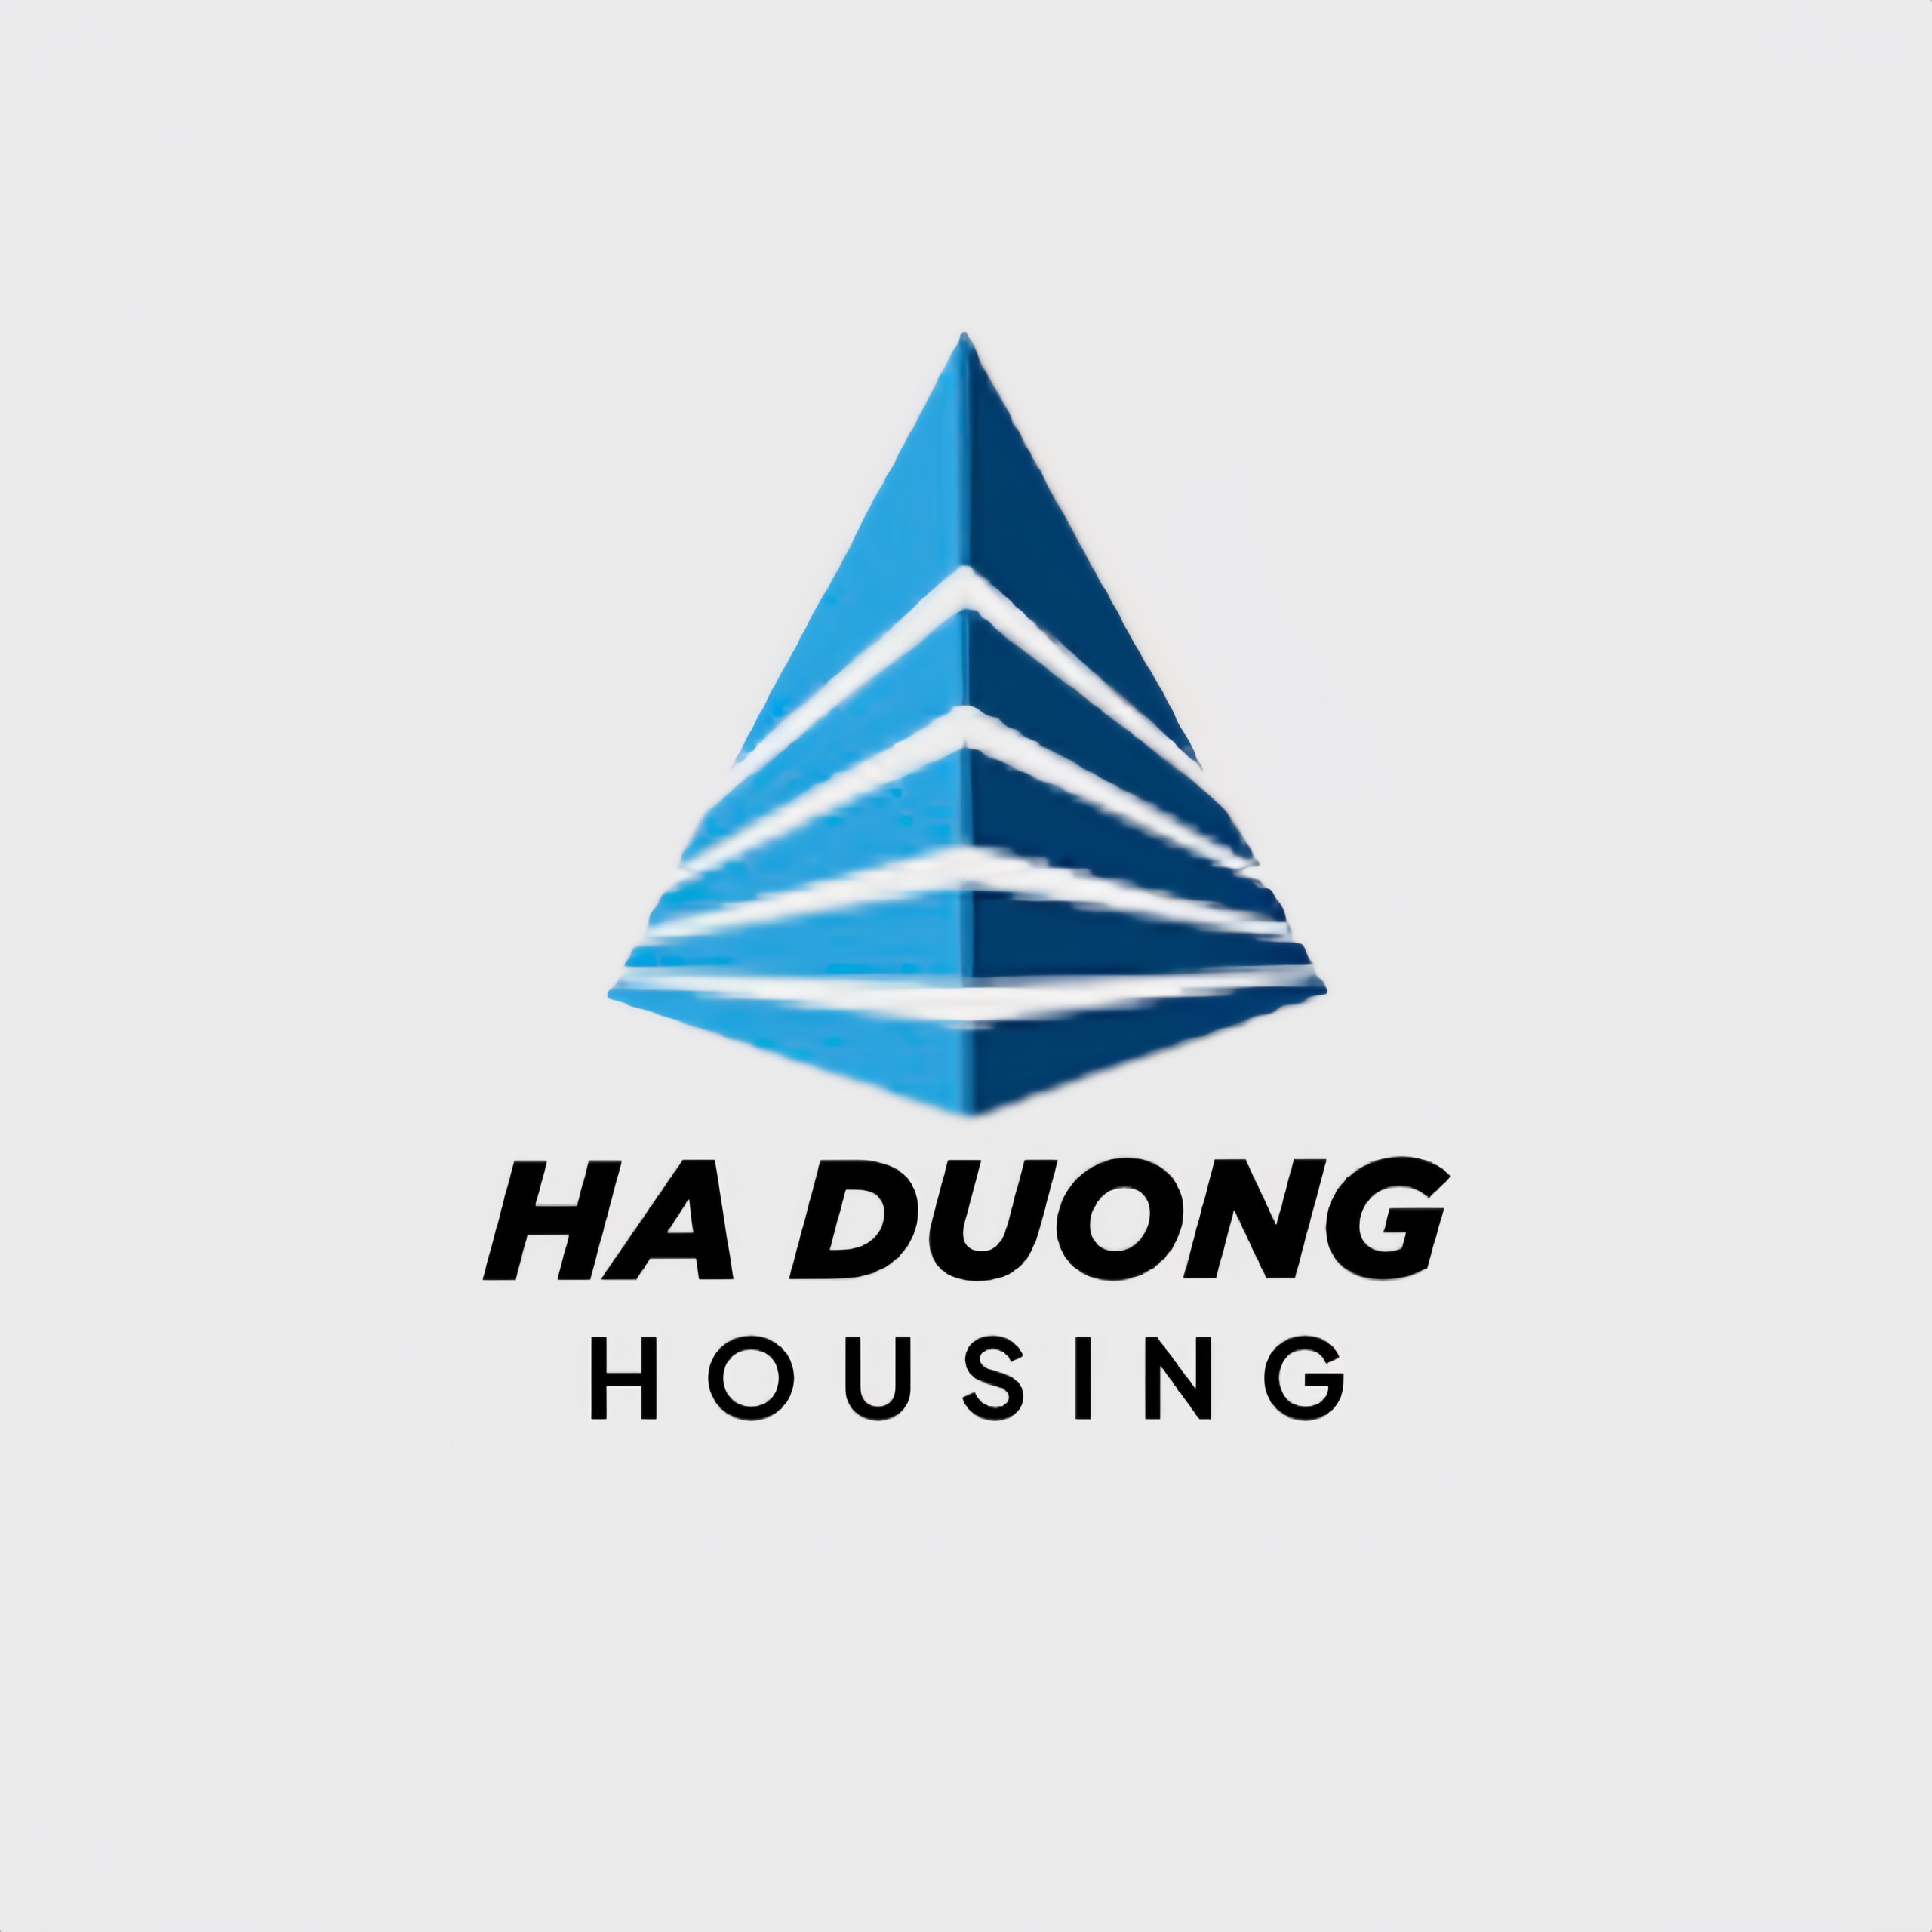 HA DUONG HOUSING